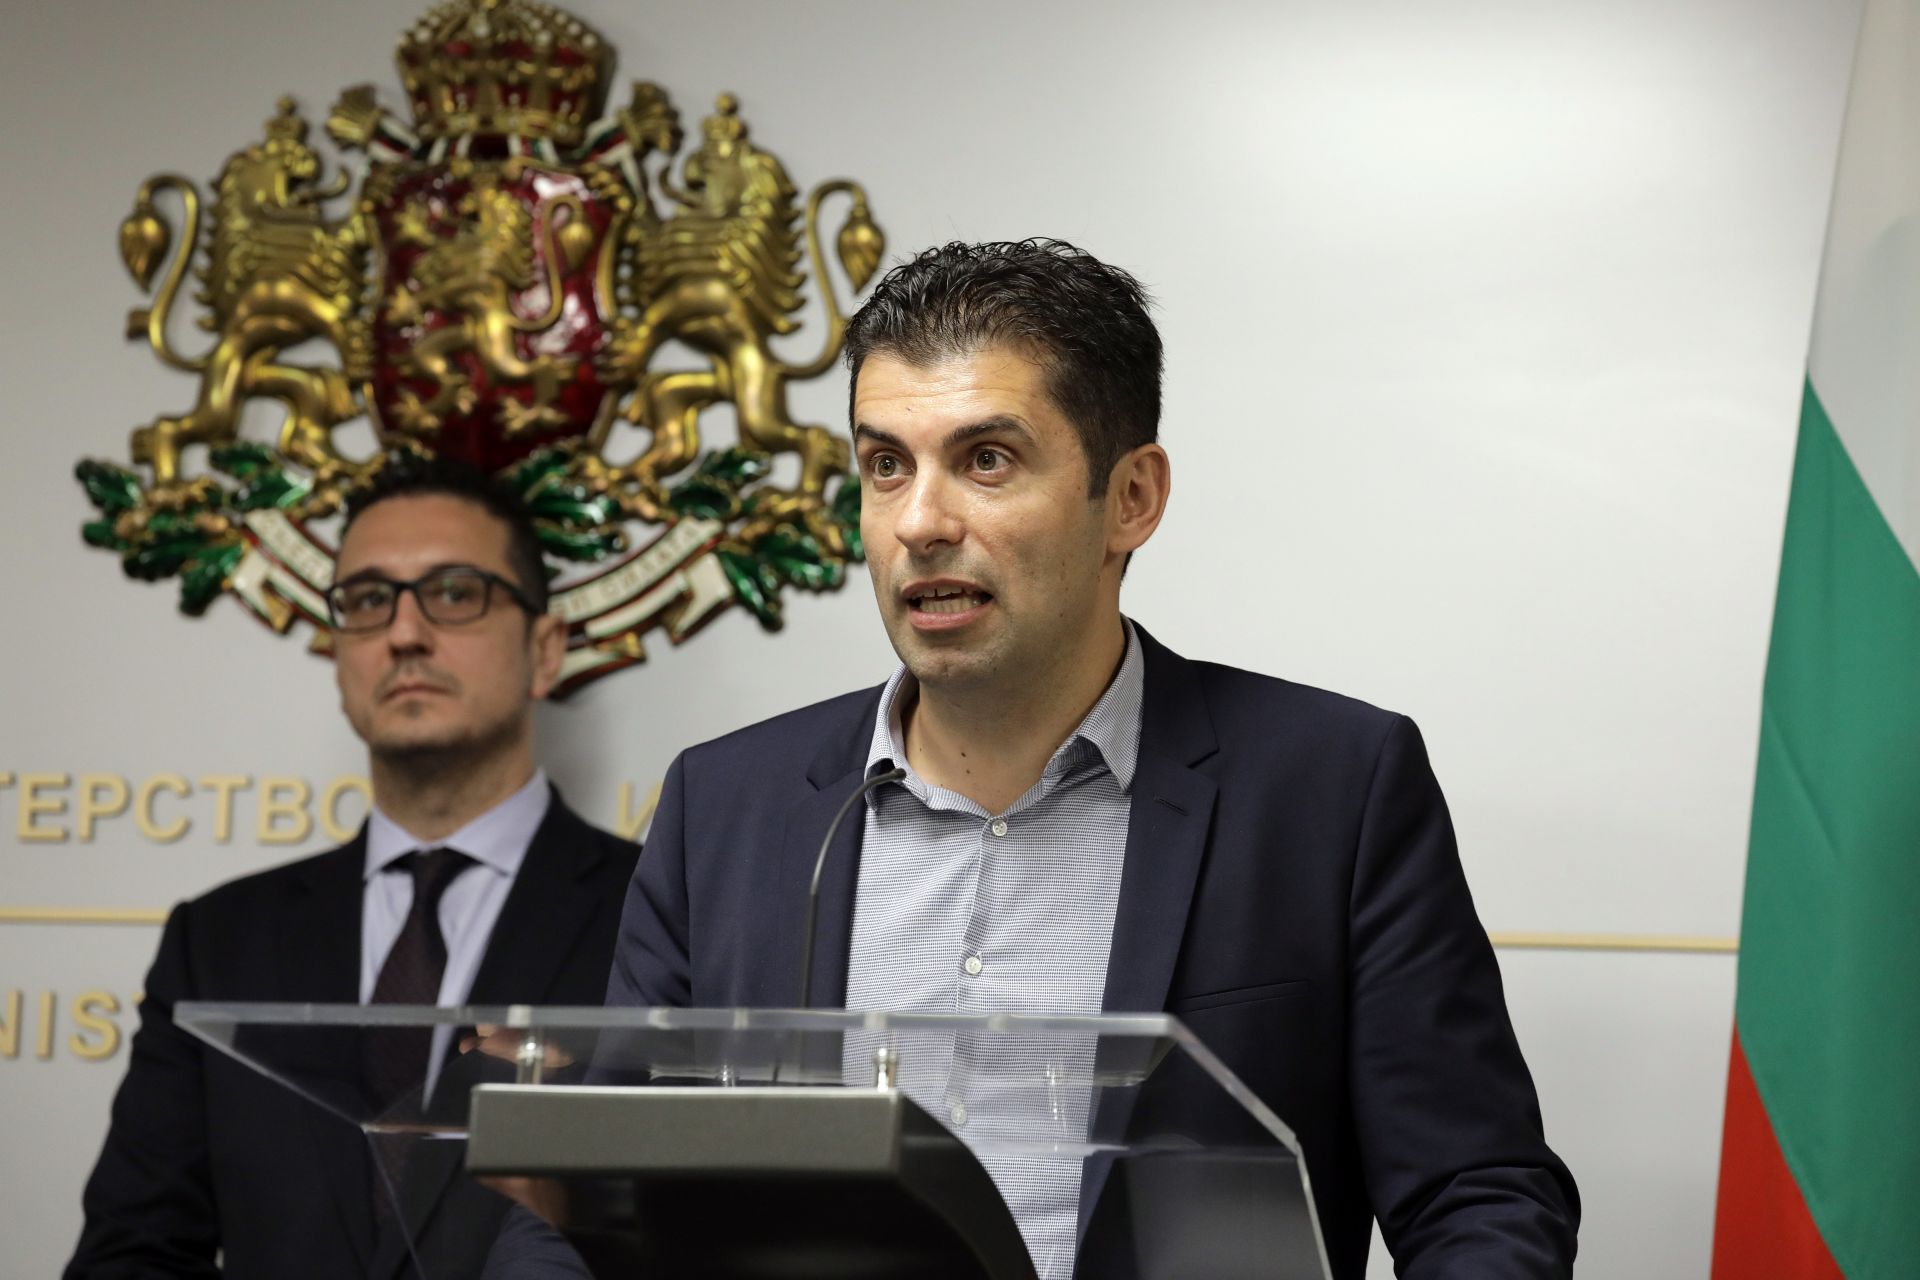 Кирил Петков, а до него вляво е изпълнителният директор на Българска агенция за инвестициите Стамен Янев по време на брифинга пред журналисти